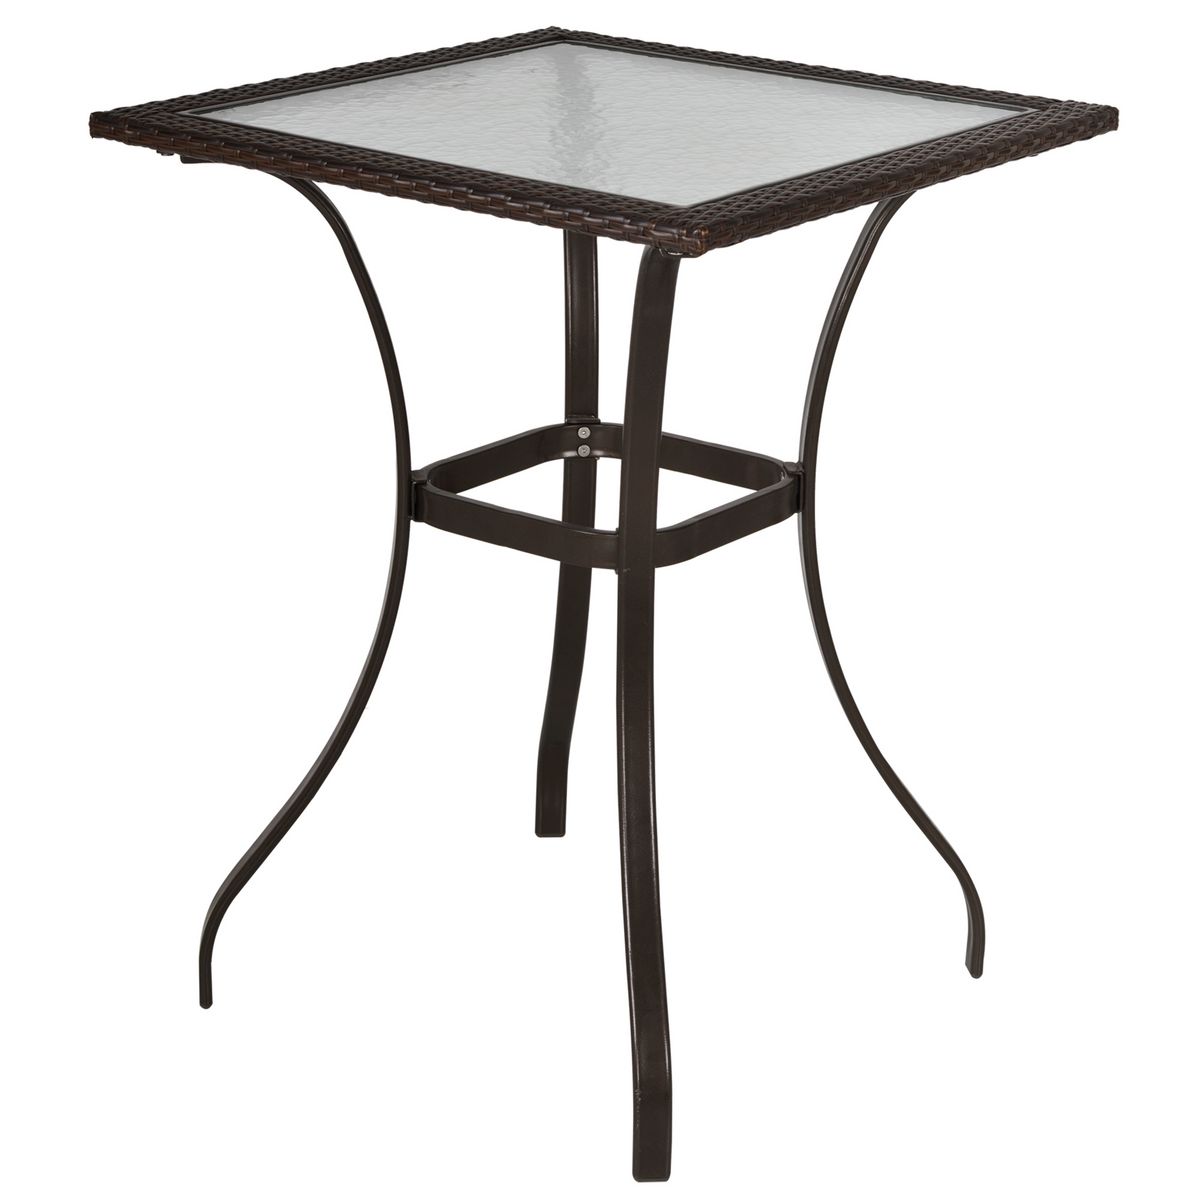 OUTSUNNY Table carrée bistro de jardin dim. 72L X 72l x 94H cm métal époxy résine tressée chocolat plateau verre trempé